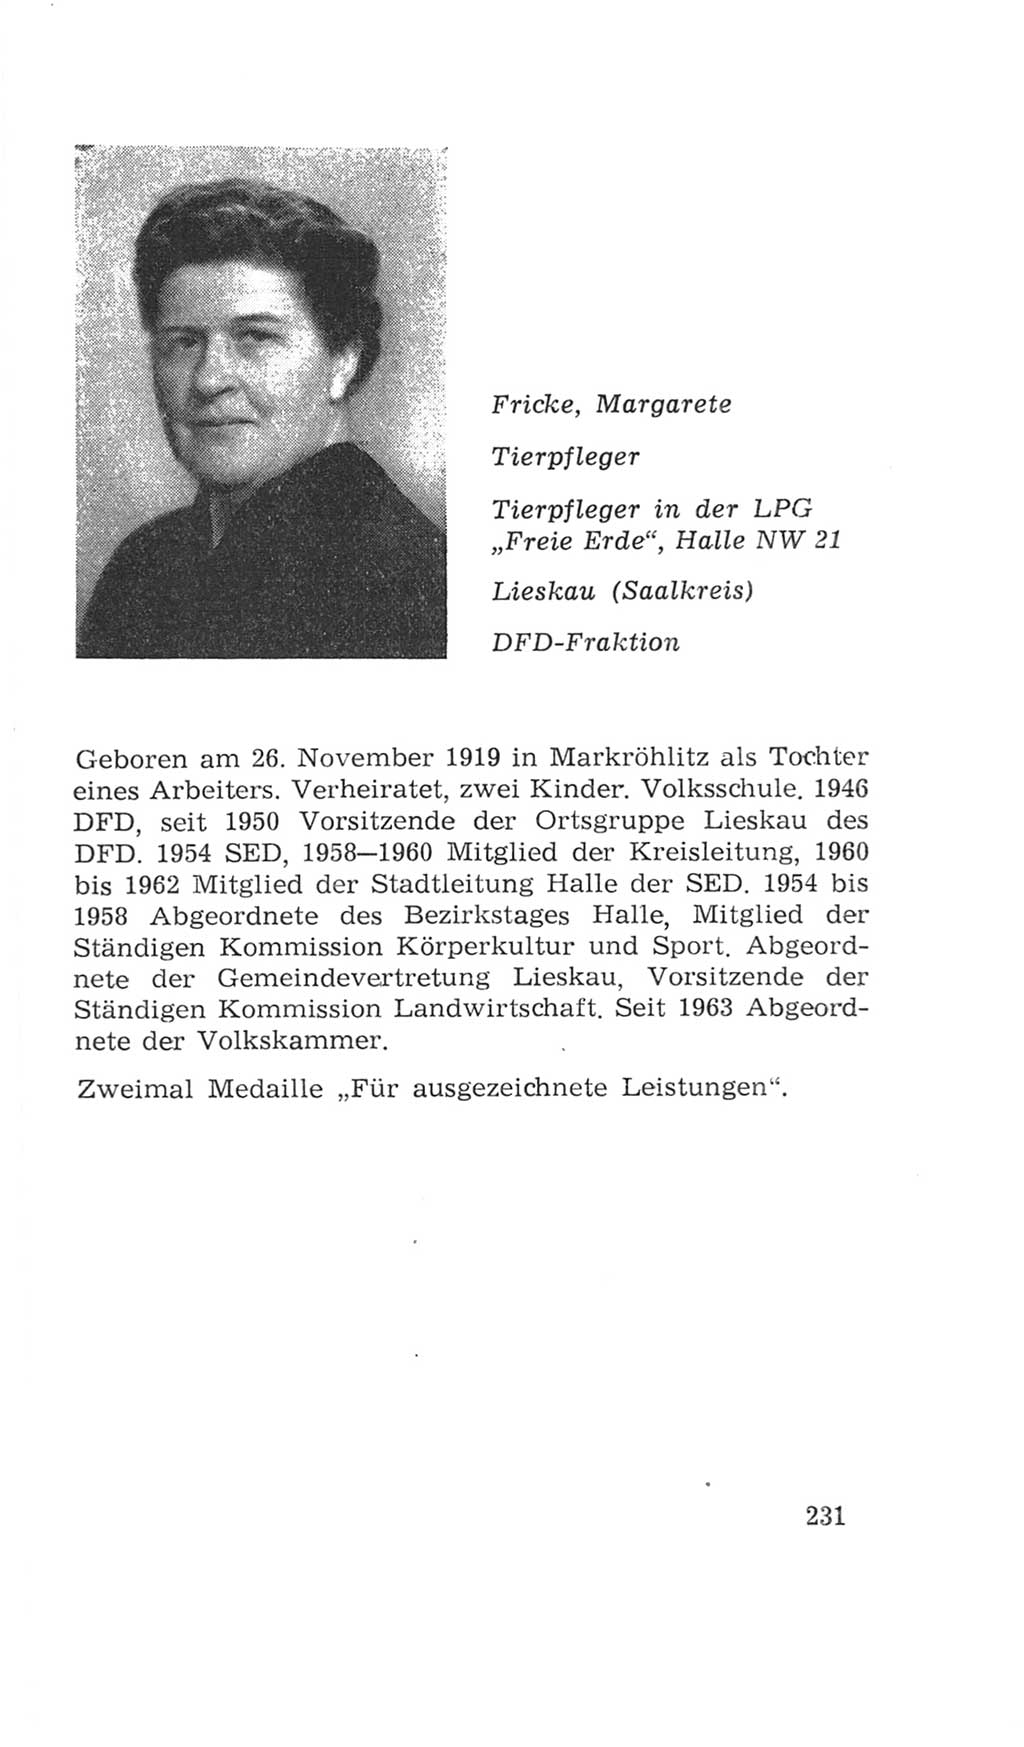 Volkskammer (VK) der Deutschen Demokratischen Republik (DDR), 4. Wahlperiode 1963-1967, Seite 231 (VK. DDR 4. WP. 1963-1967, S. 231)